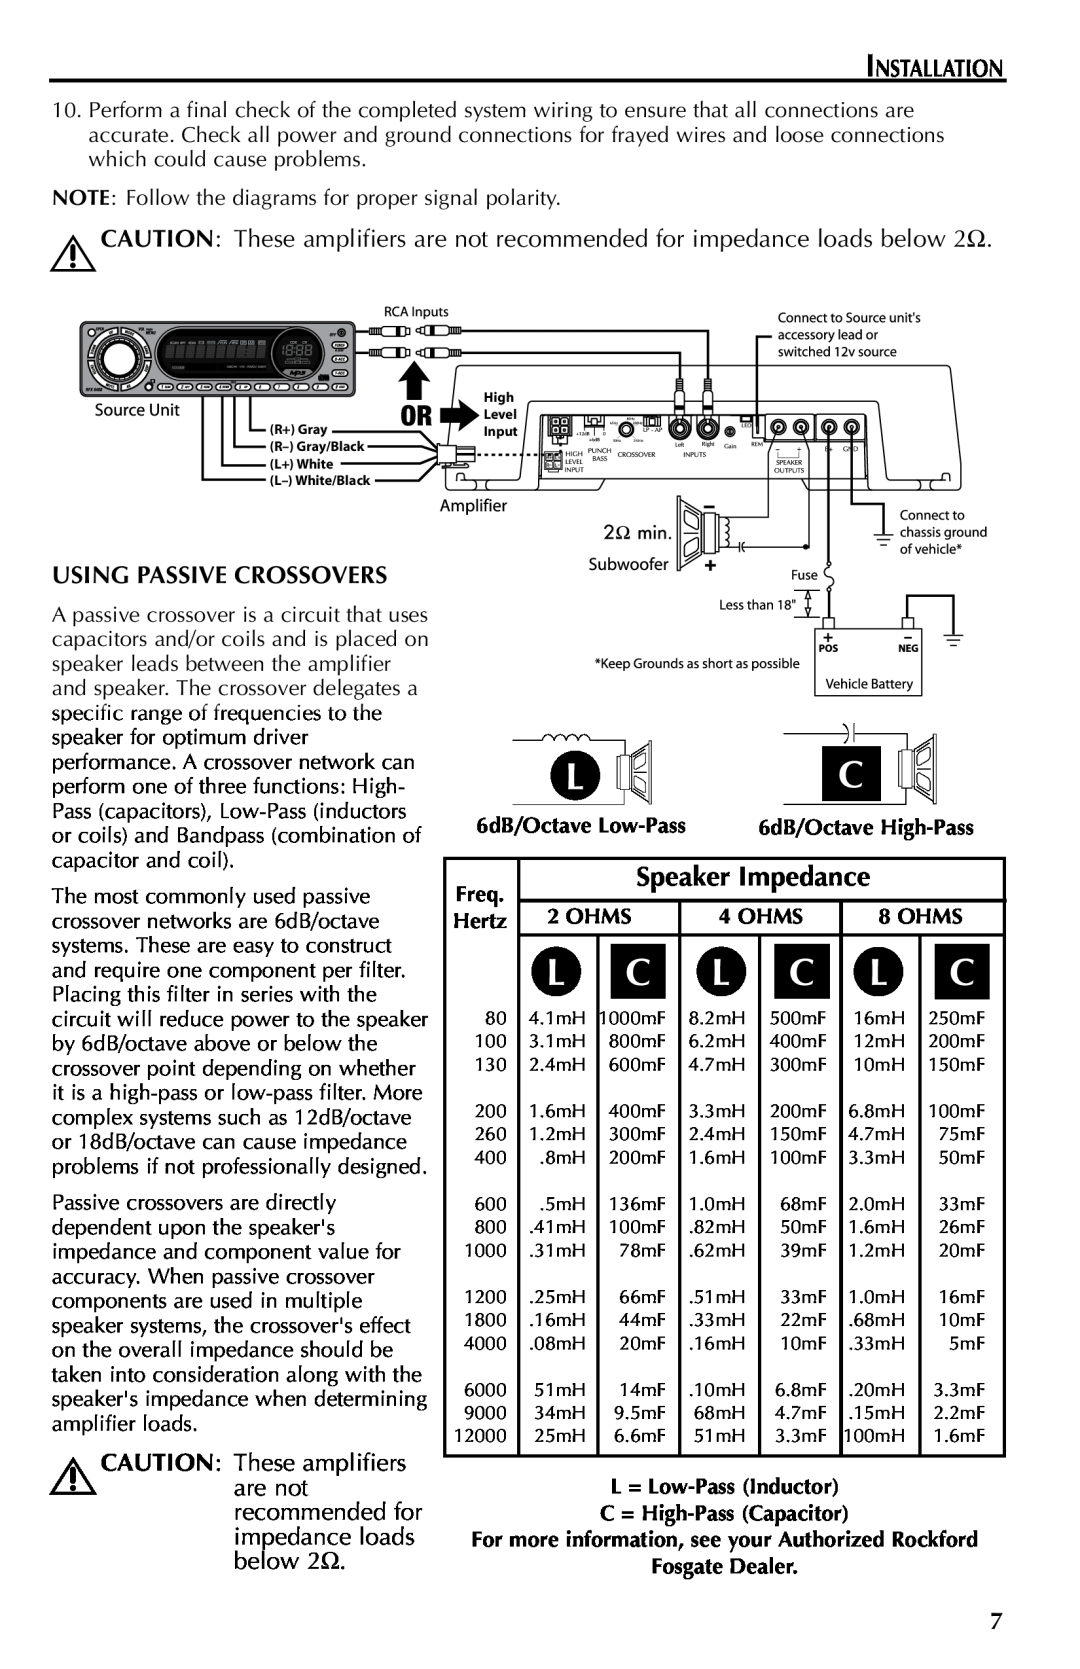 Rockford Fosgate Mono Amplifier manual Speaker Impedance 